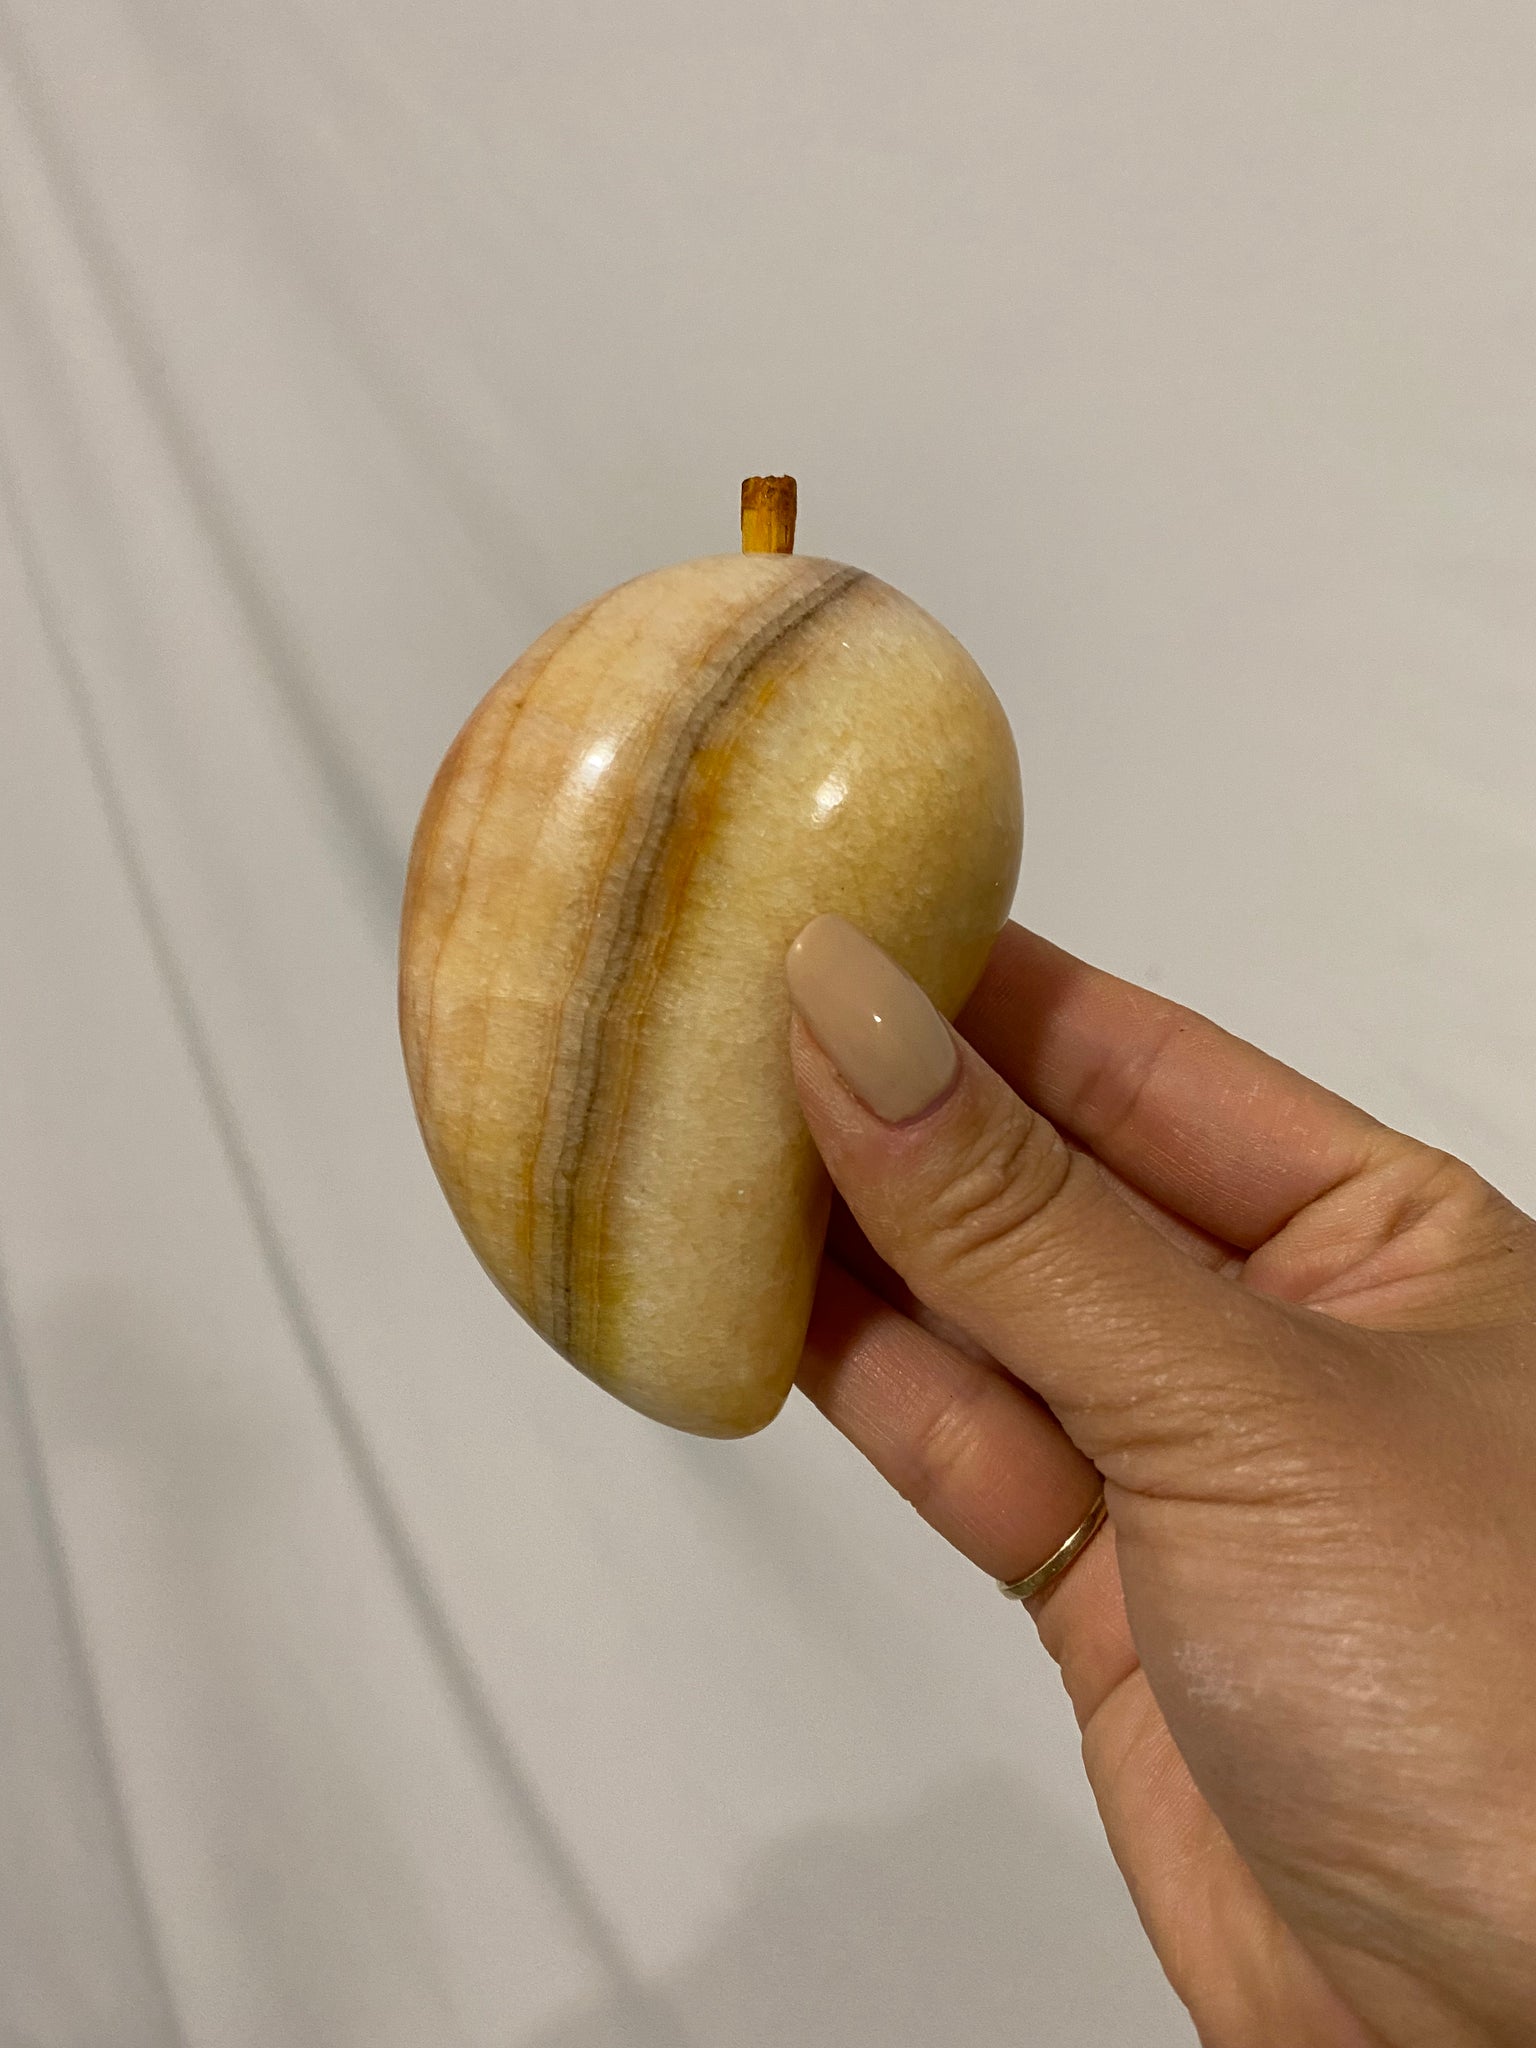 Medium sized stone fruits